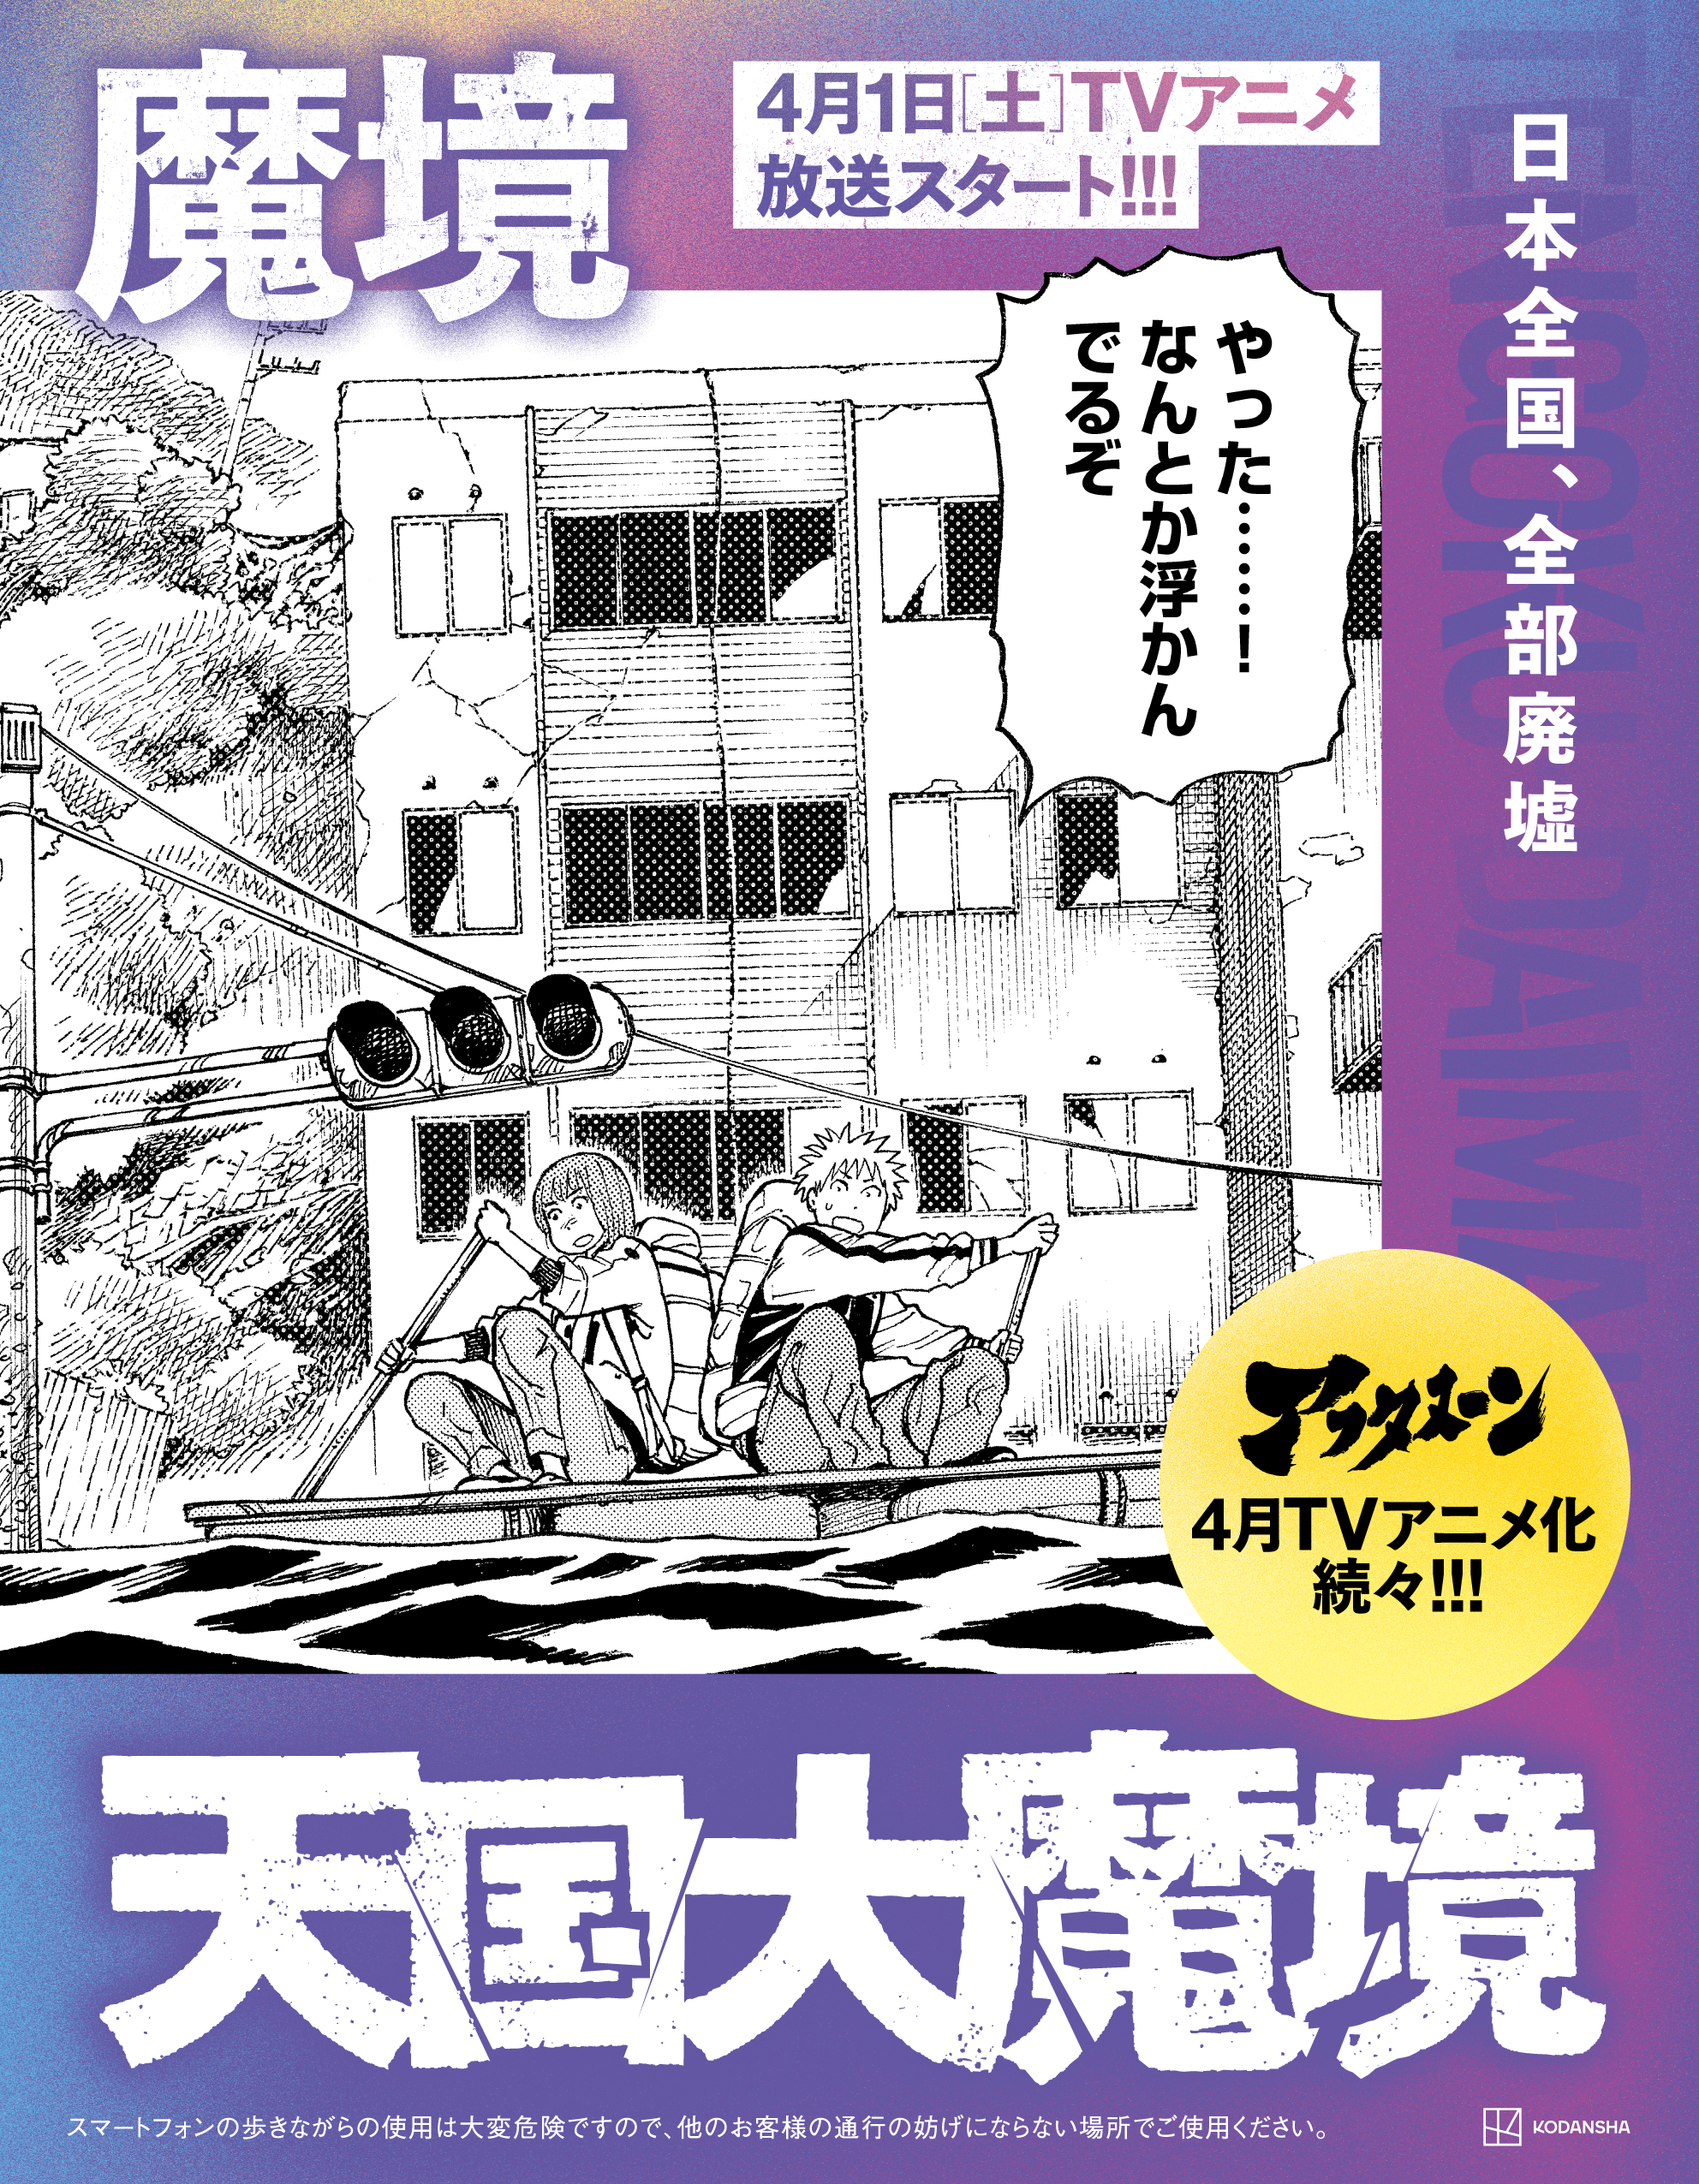 4月1日（土）TVアニメスタートの『天国大魔境』がホームドア広告となってJR東京駅・上野駅に出現。4月4日（火）TVアニメスタートの『スキップとローファー『』も同時に掲出のサブ画像2_「天国大魔境」